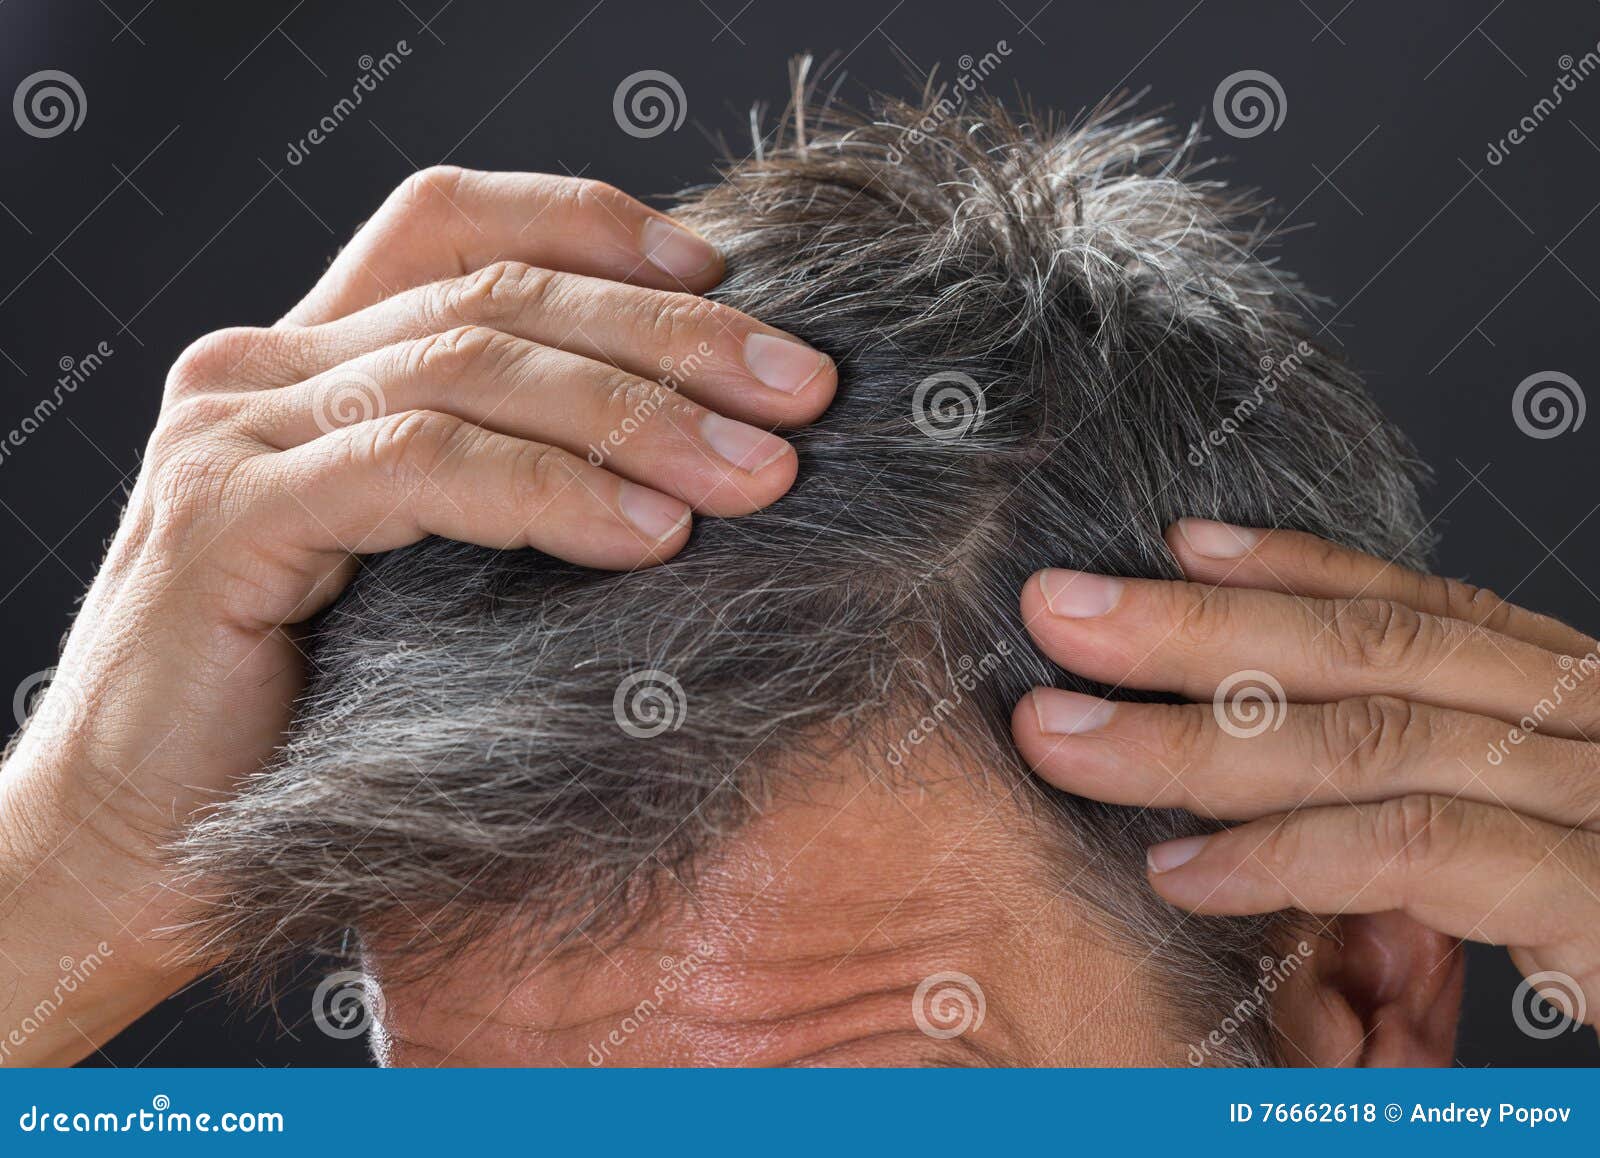 man examining his white hair